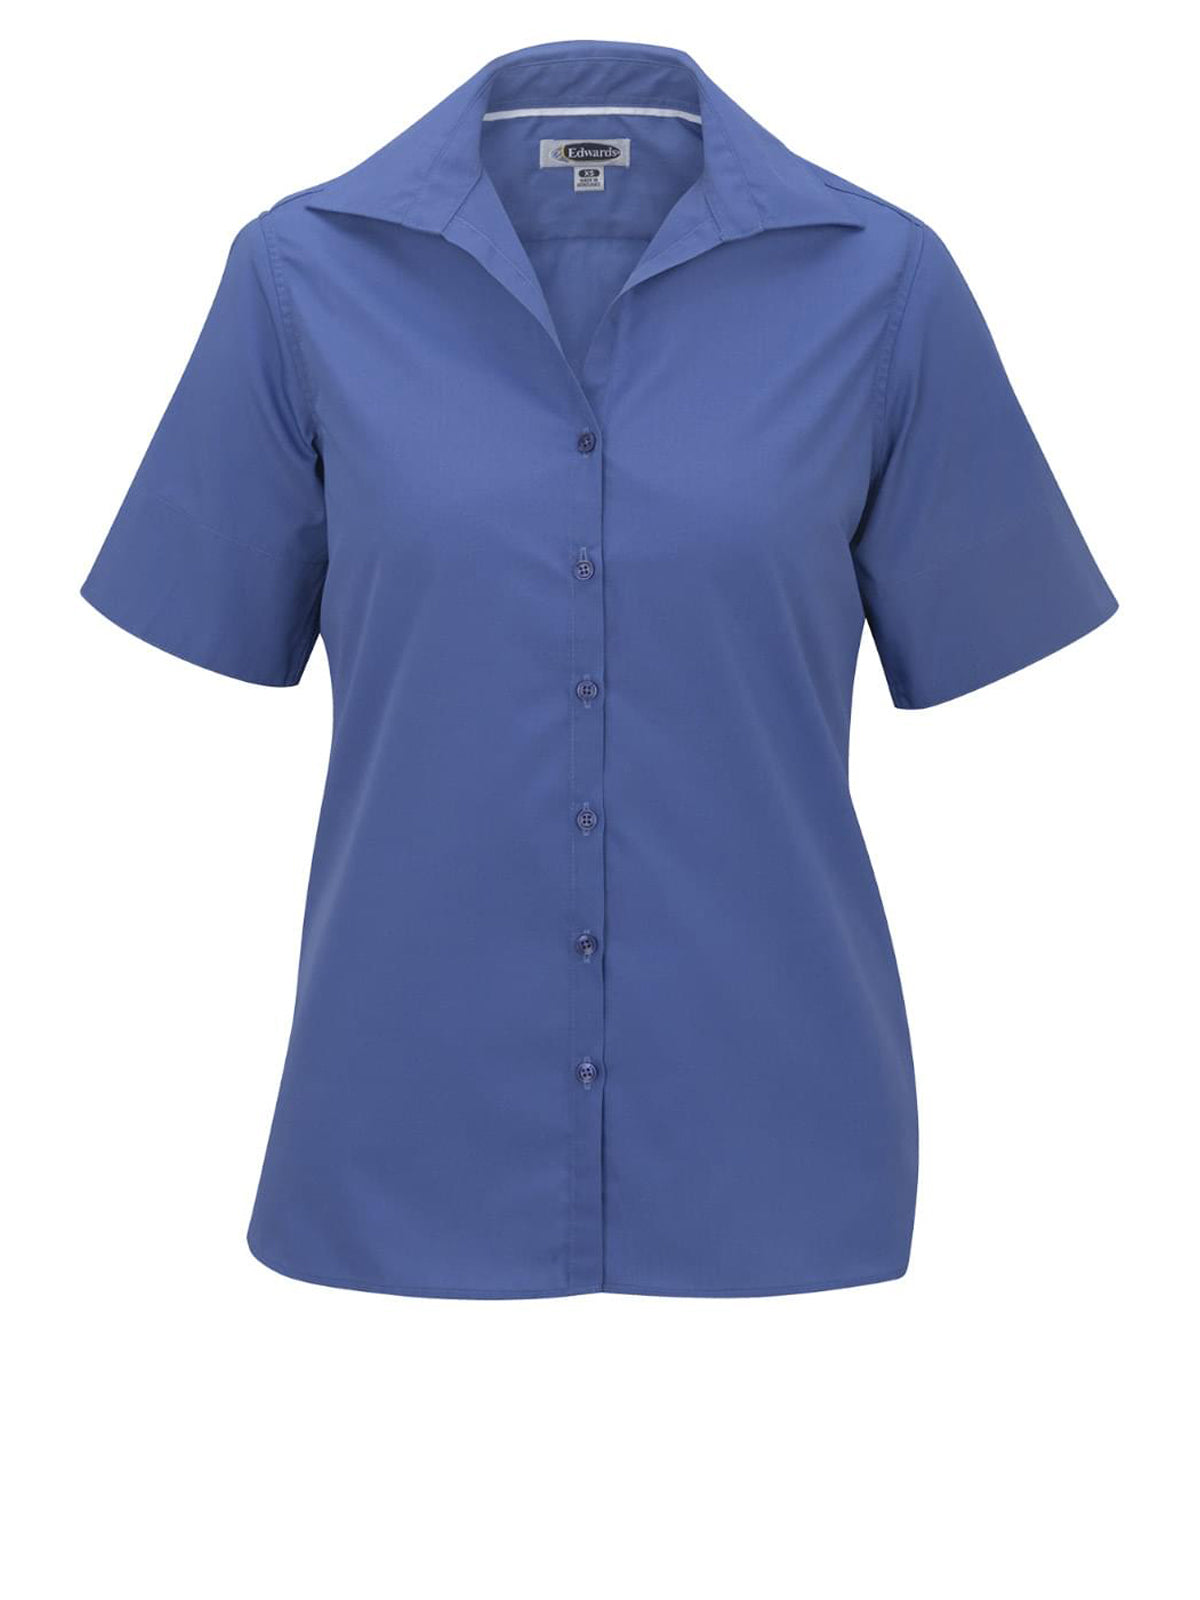 Women's Short Sleeve Lightweight Poplin Shirt